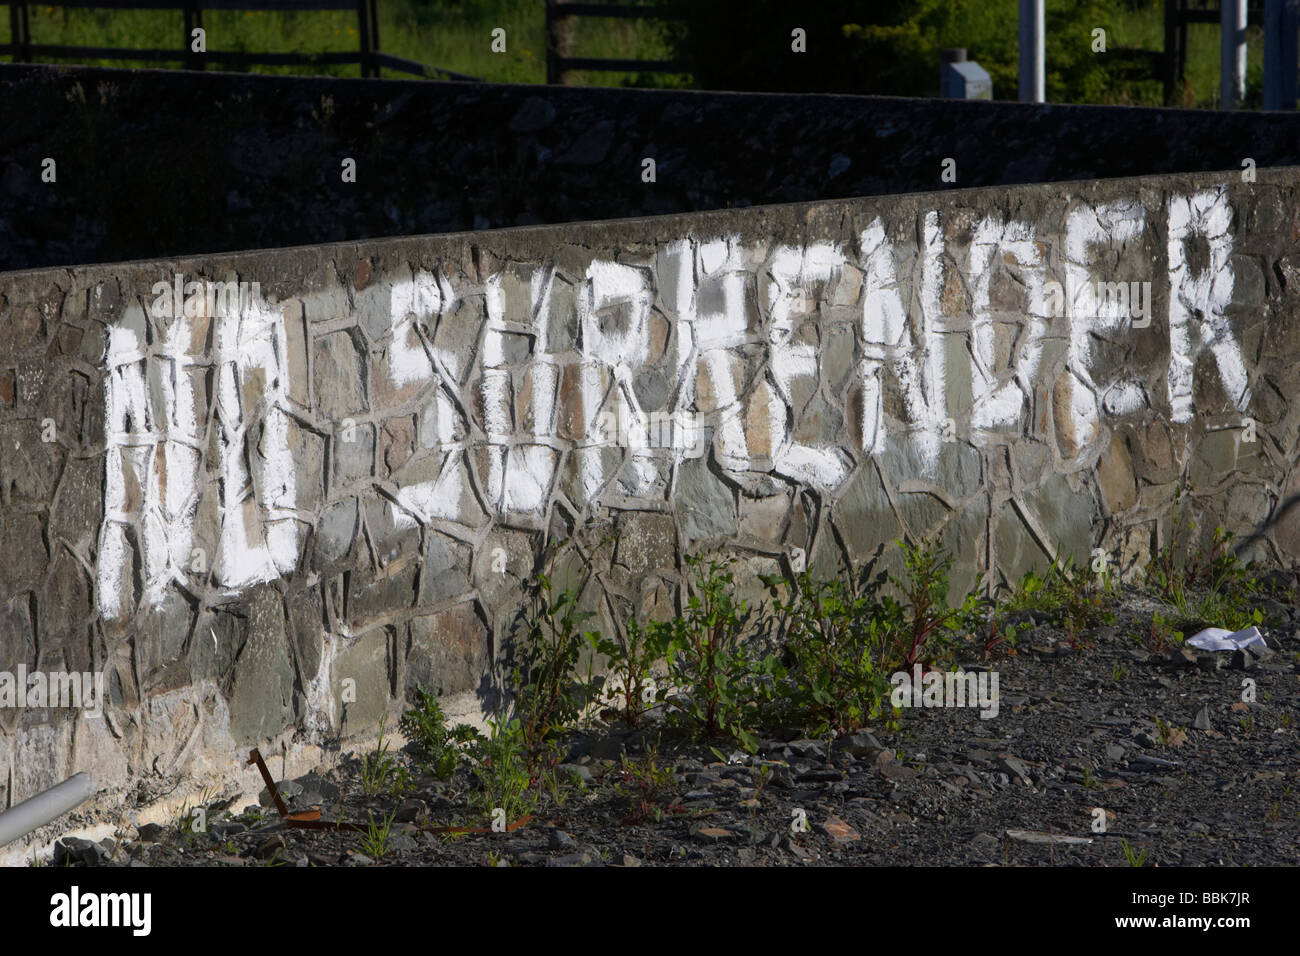 Ulster lealisti nessuna rinuncia graffiti dipinta su un muro in un unionista area protestante di Irlanda del Nord Foto Stock